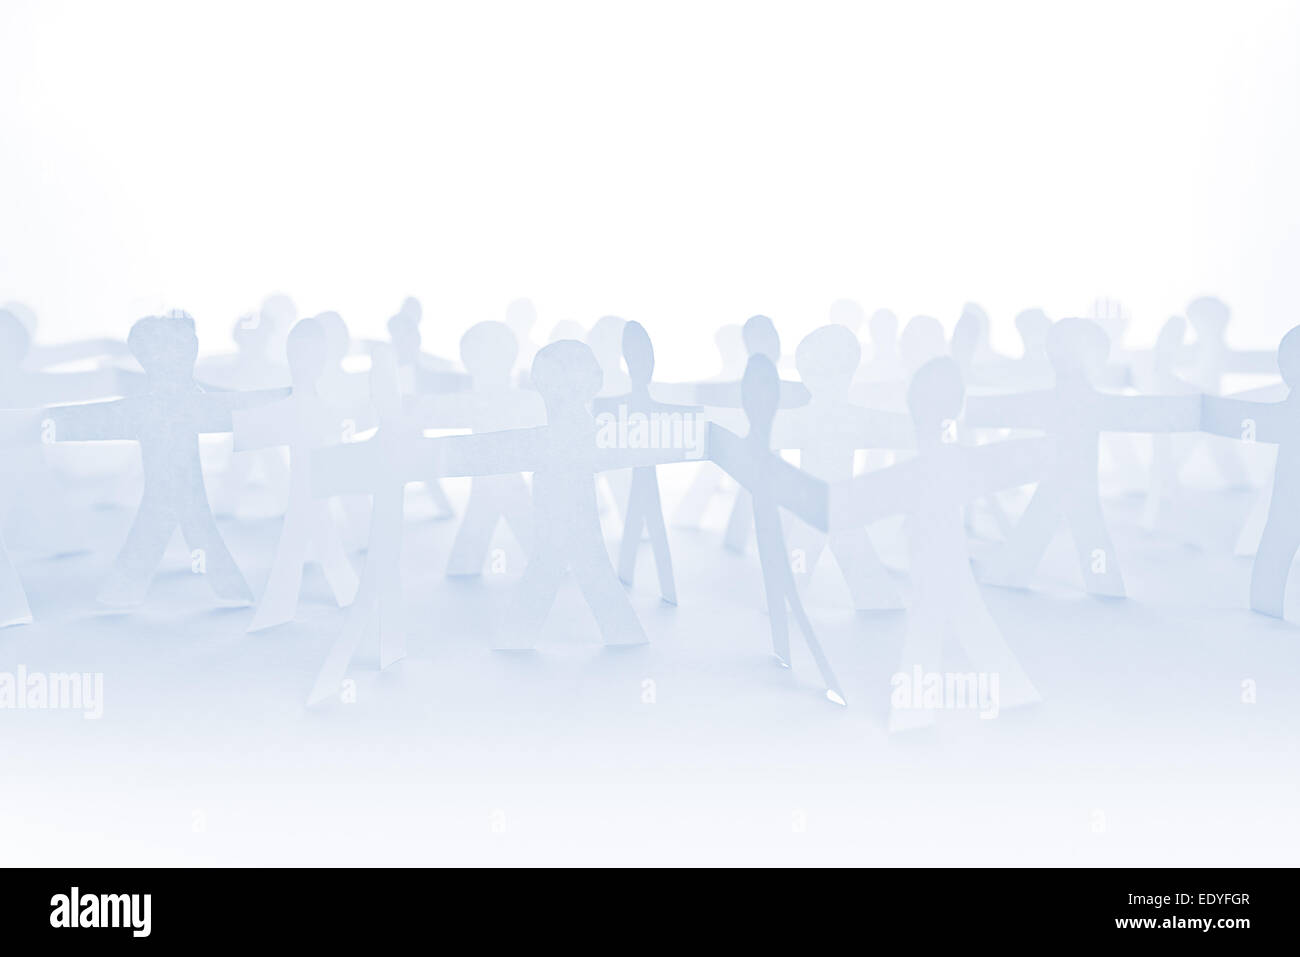 Menschen Scherenschnitt Kette als Masse oder Teamarbeit abstraktes Konzept mit weißen Textfreiraum Stockfoto